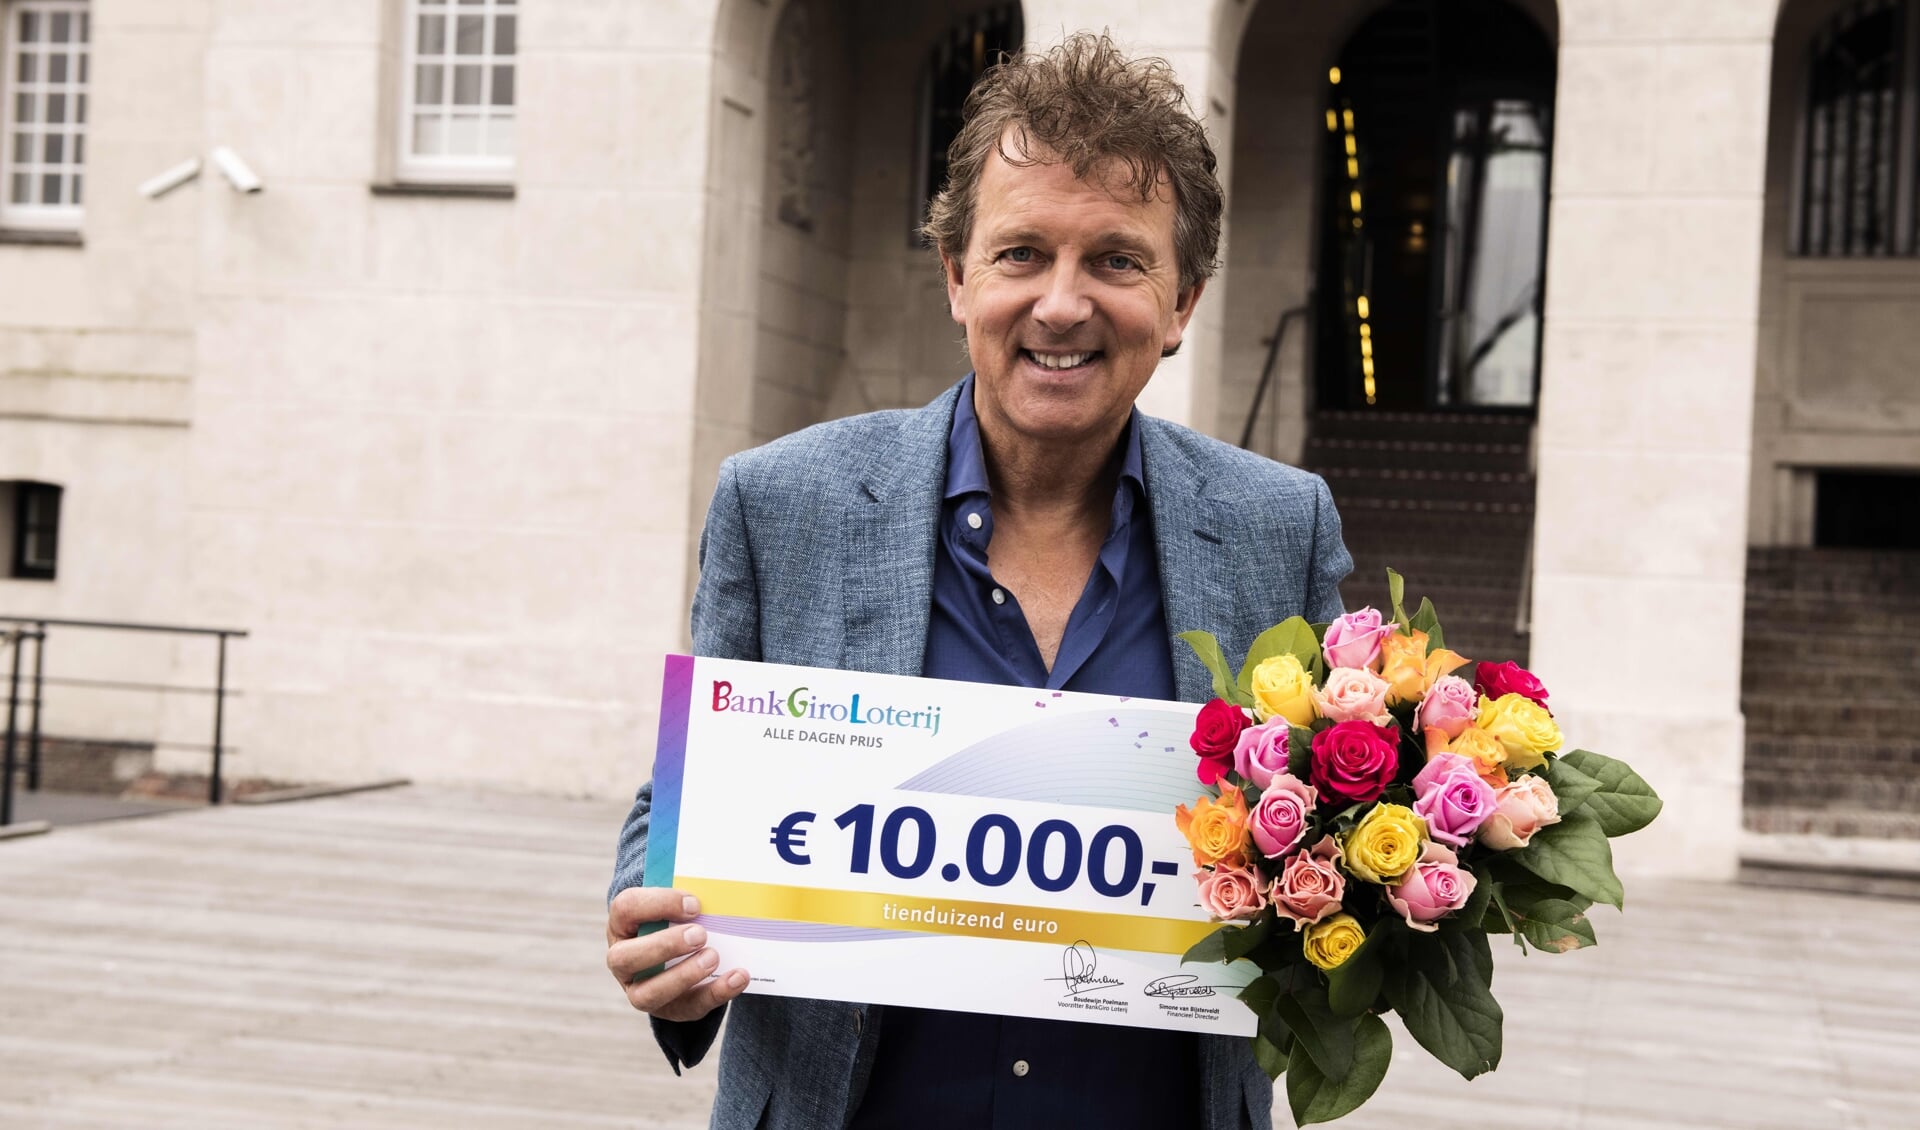 Robert ten Brink is een van de ambassadeurs van de BankGiro Loterij die de cheques uitreikt.